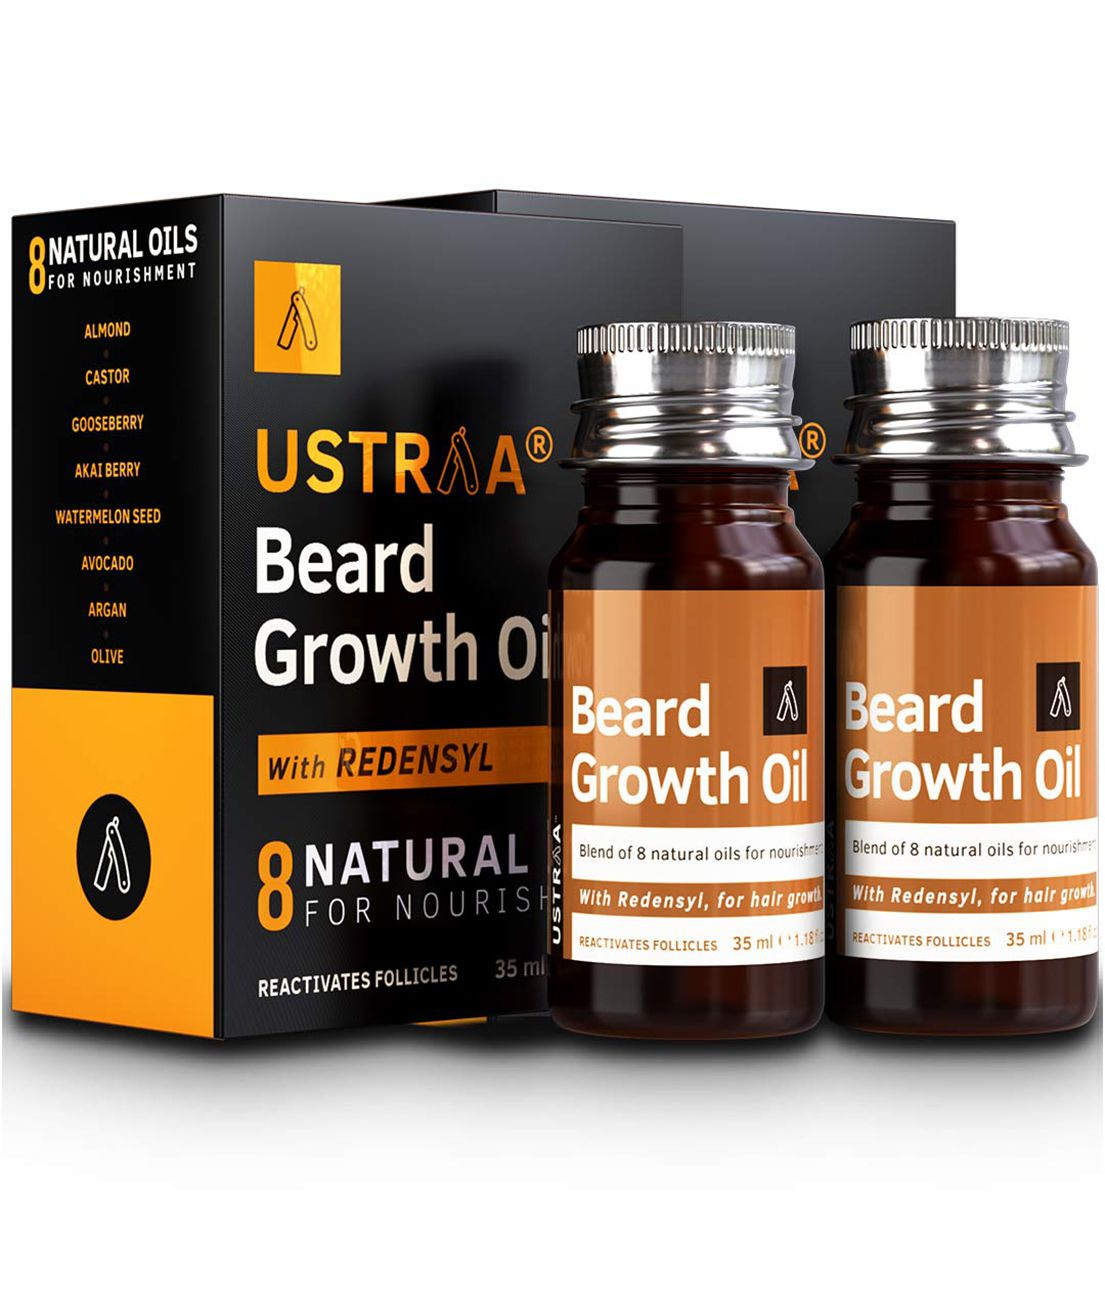     			Ustraa - 35mL Growth Increasing Beard Oil (Pack of 2)